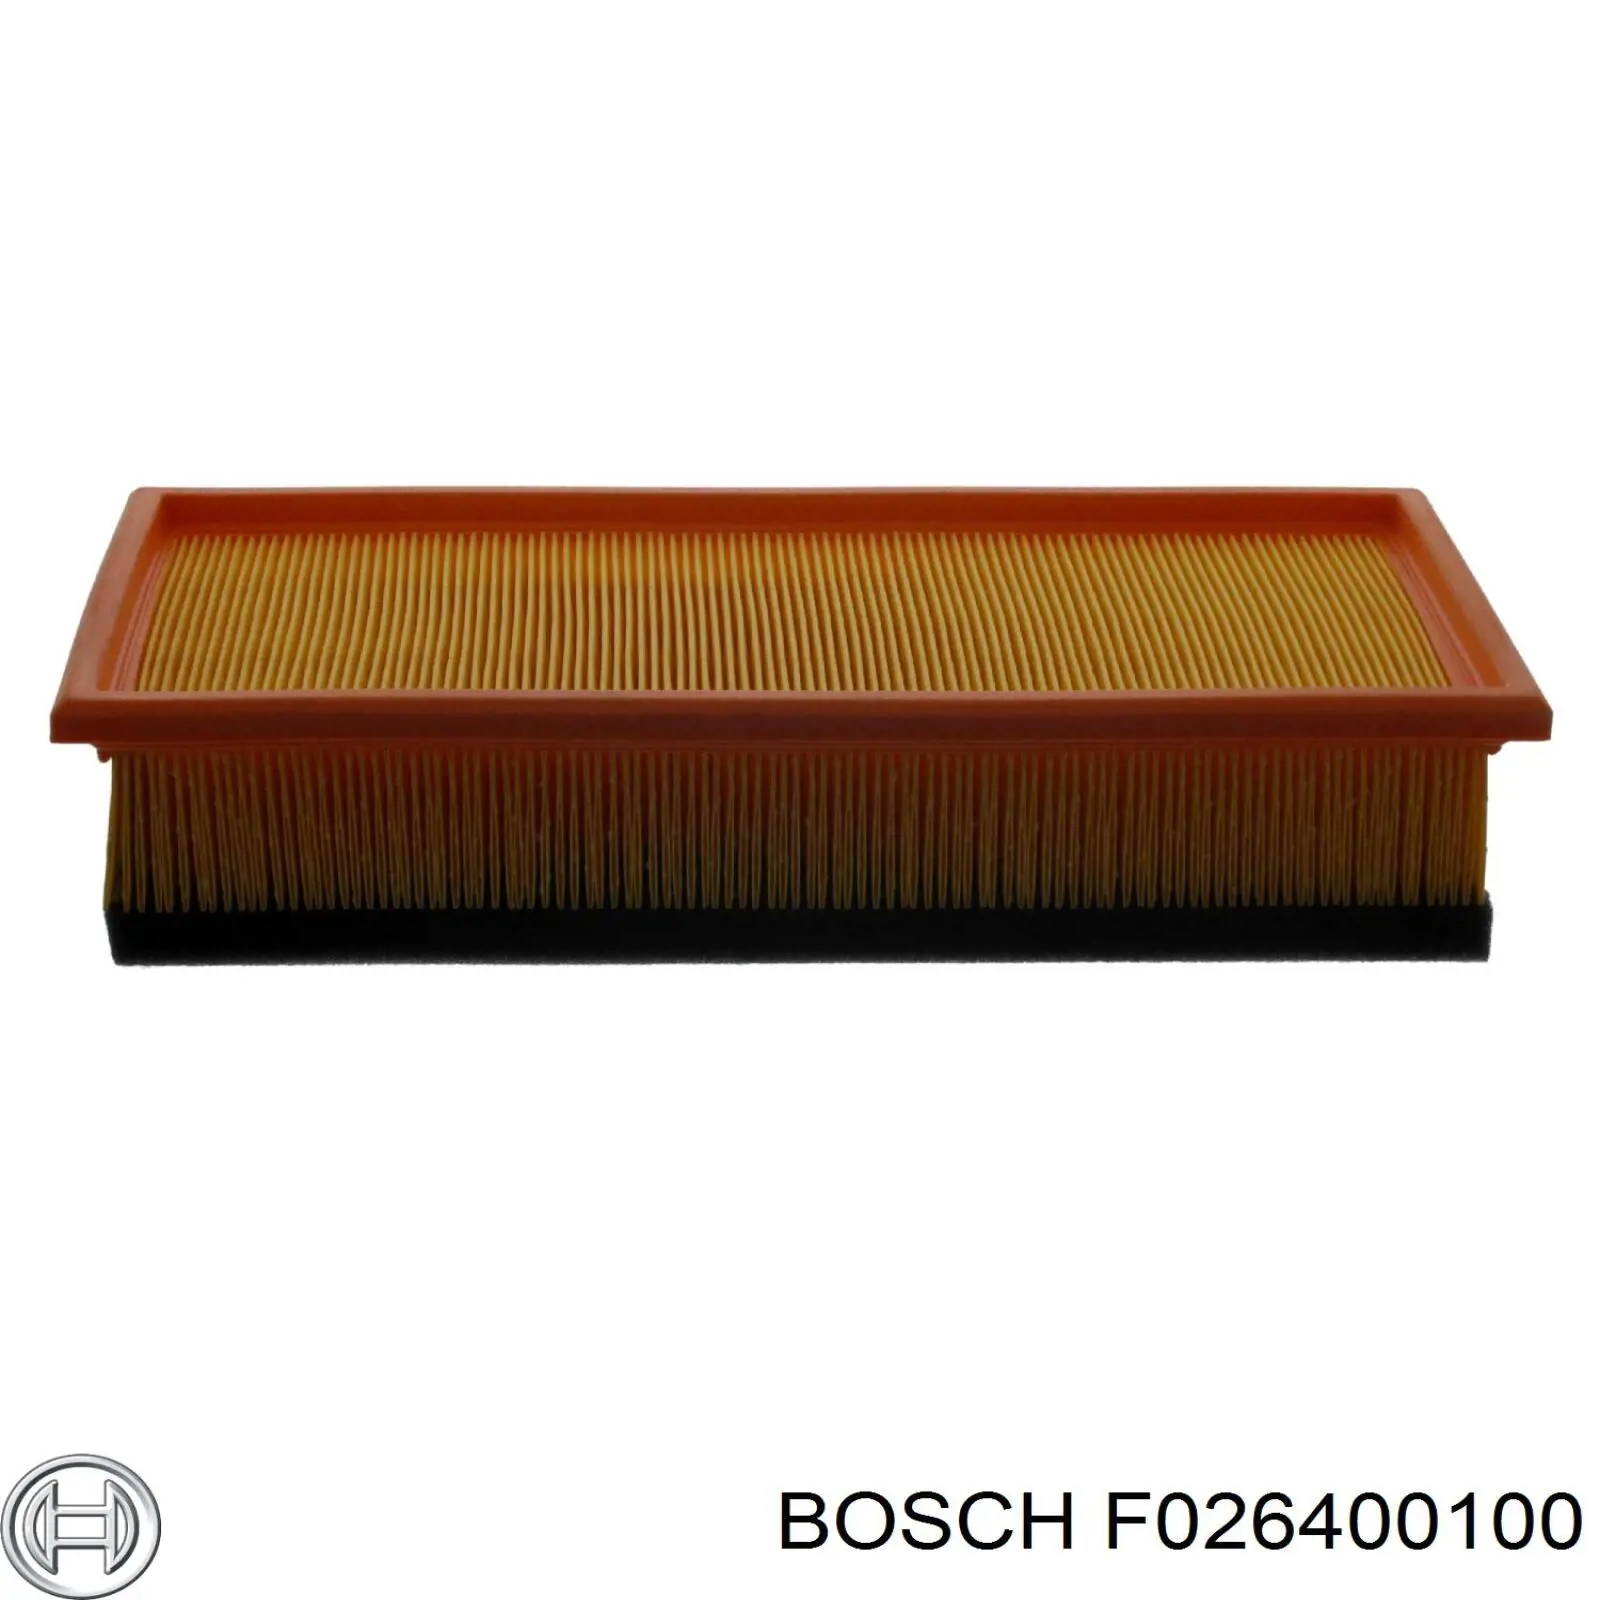 F 026 400 100 Bosch filtro de aire